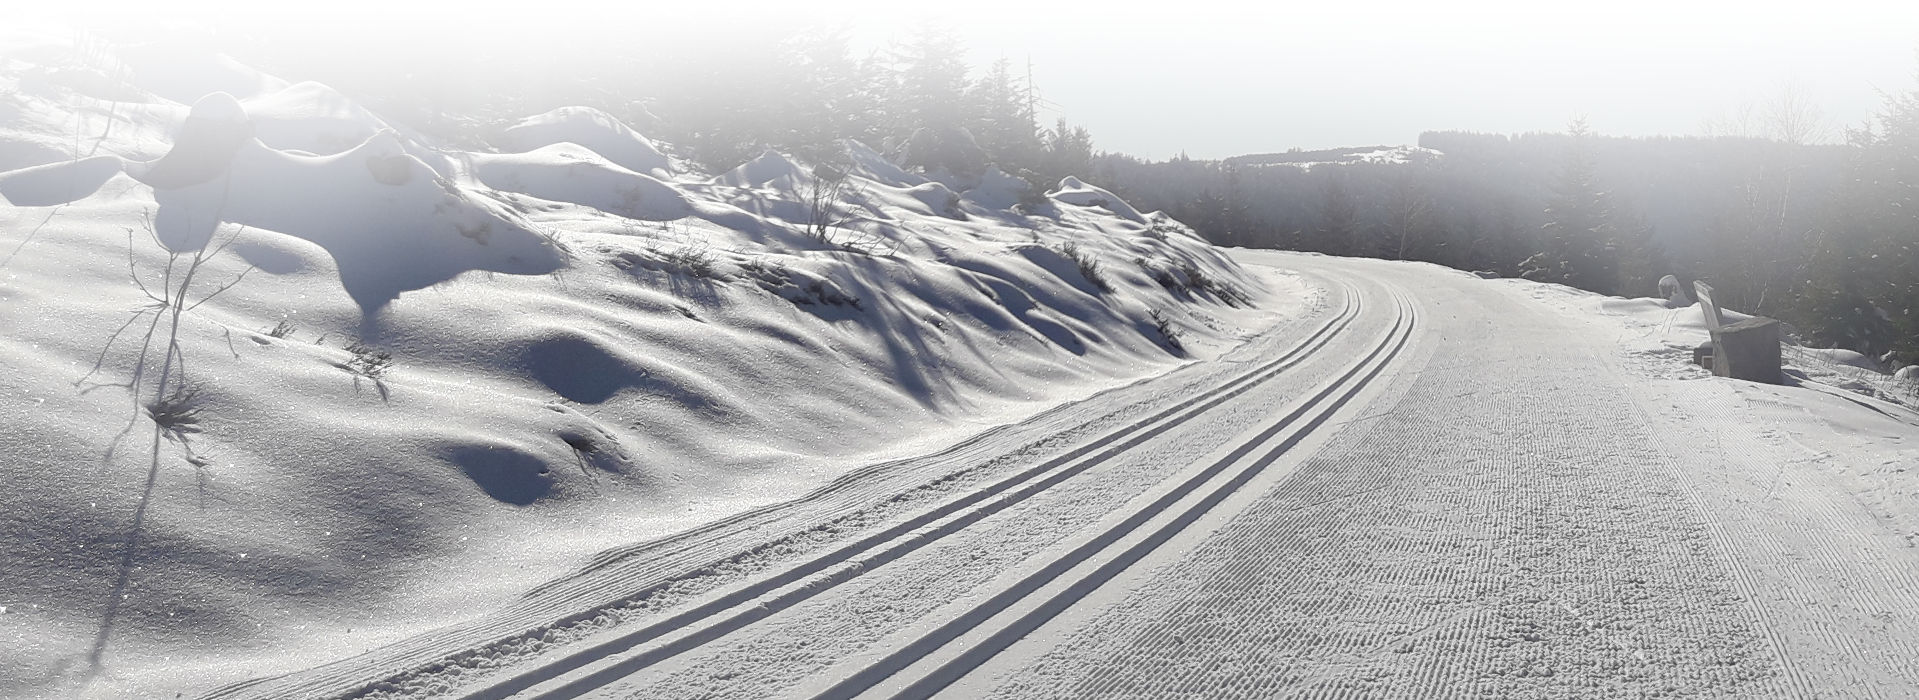 Ein mit tiefem Schnee bedeckter, leicht ansteigender Weg an einem strahlend sonnigen Wintertag. Die eine Hälfte des Weges sieht aus wie frisch geharkt und platt gewalzt, über die andere Hälfte ziehen sich vier parallele Spuren, die in den gewalzten Schnee gefräst wurden.